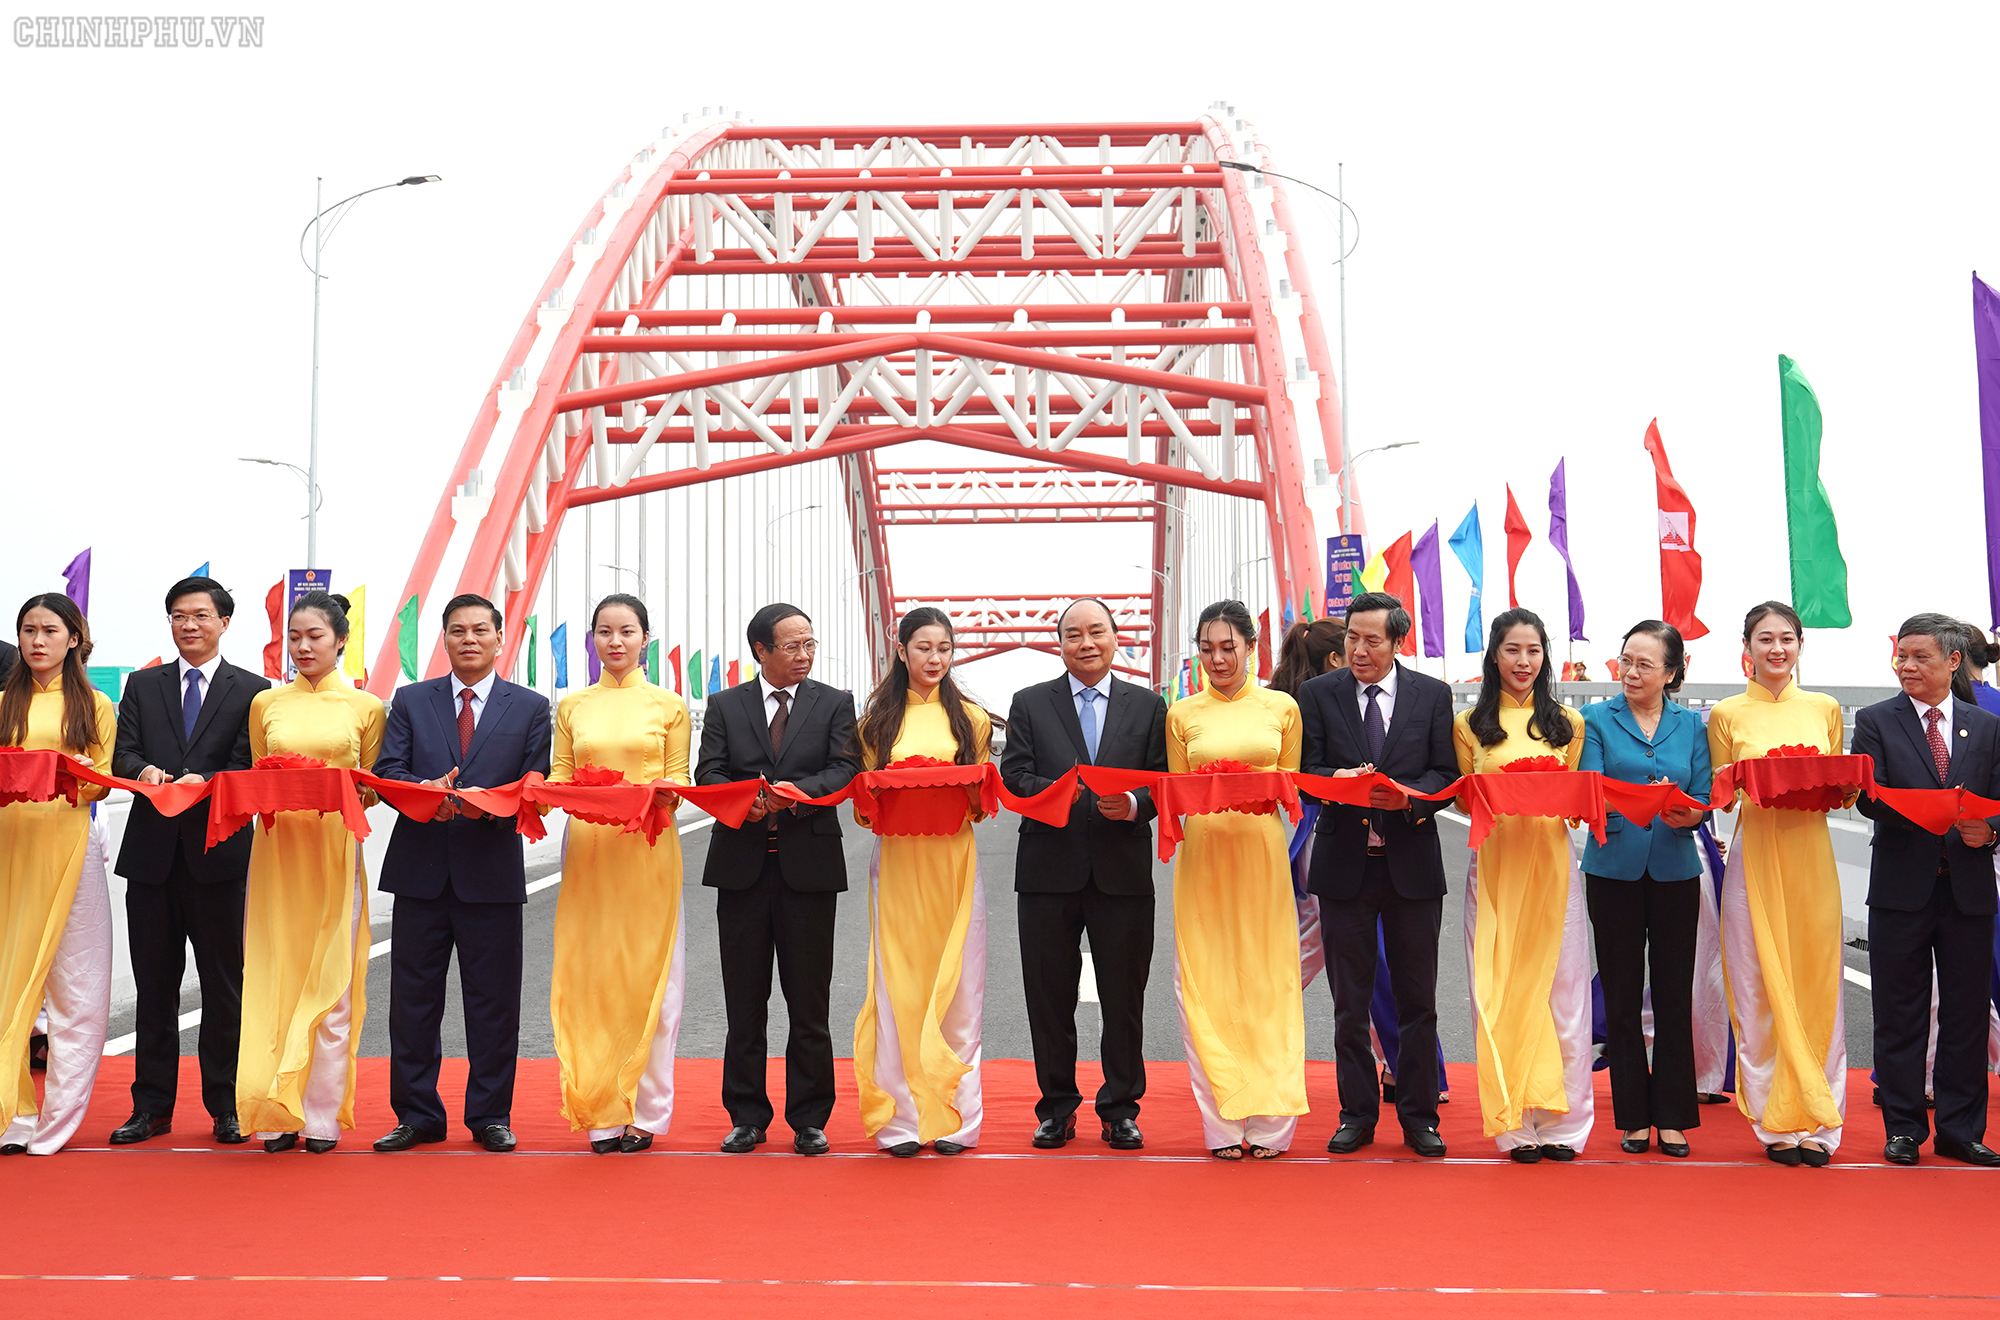 Chùm ảnh: Thủ tướng dự lễ thông xe cầu Hoàng Văn Thụ, Hải Phòng